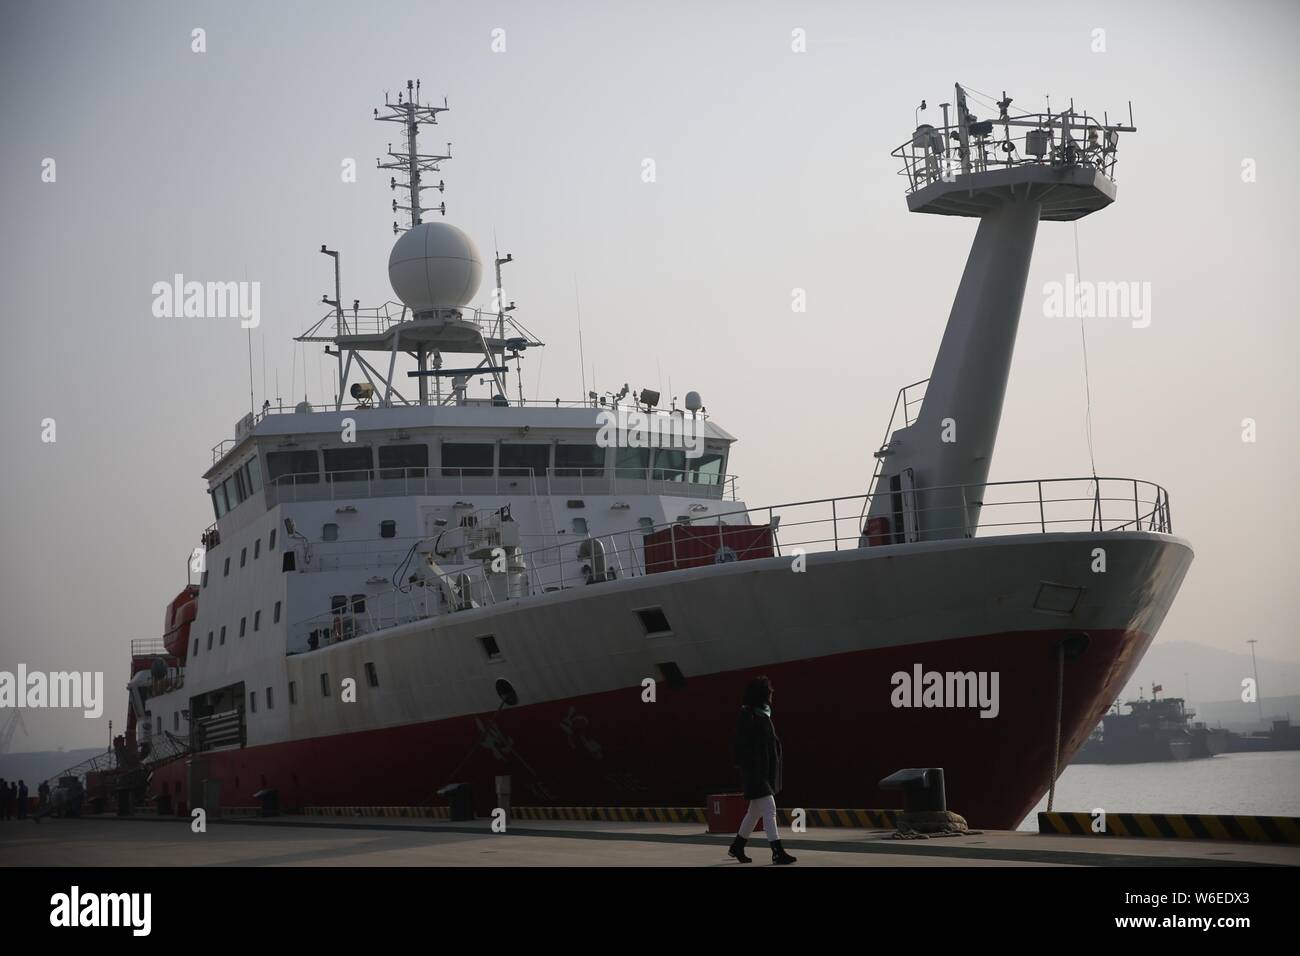 China's Forschungsschiff der Kexue, oder "Wissenschaft", wird dargestellt, vor dem Auslaufen aus einem Hafen für eine Expedition zu den Magellan Seamounts im Westen Paci Stockfoto